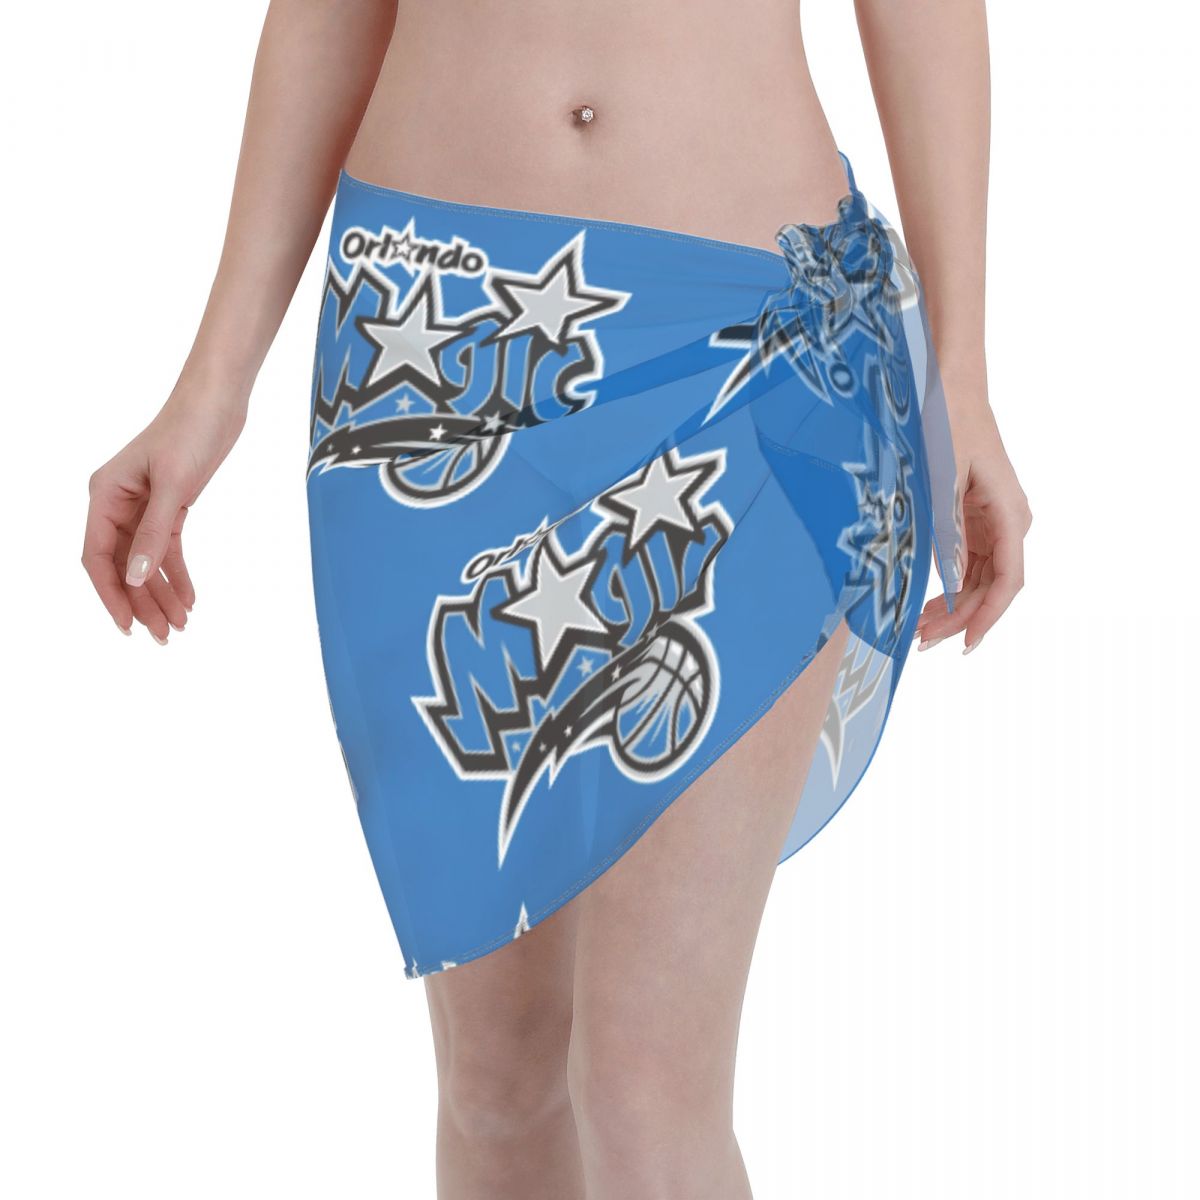 Orlando Magic Blue Women's Short Beach Sarong Cover Ups